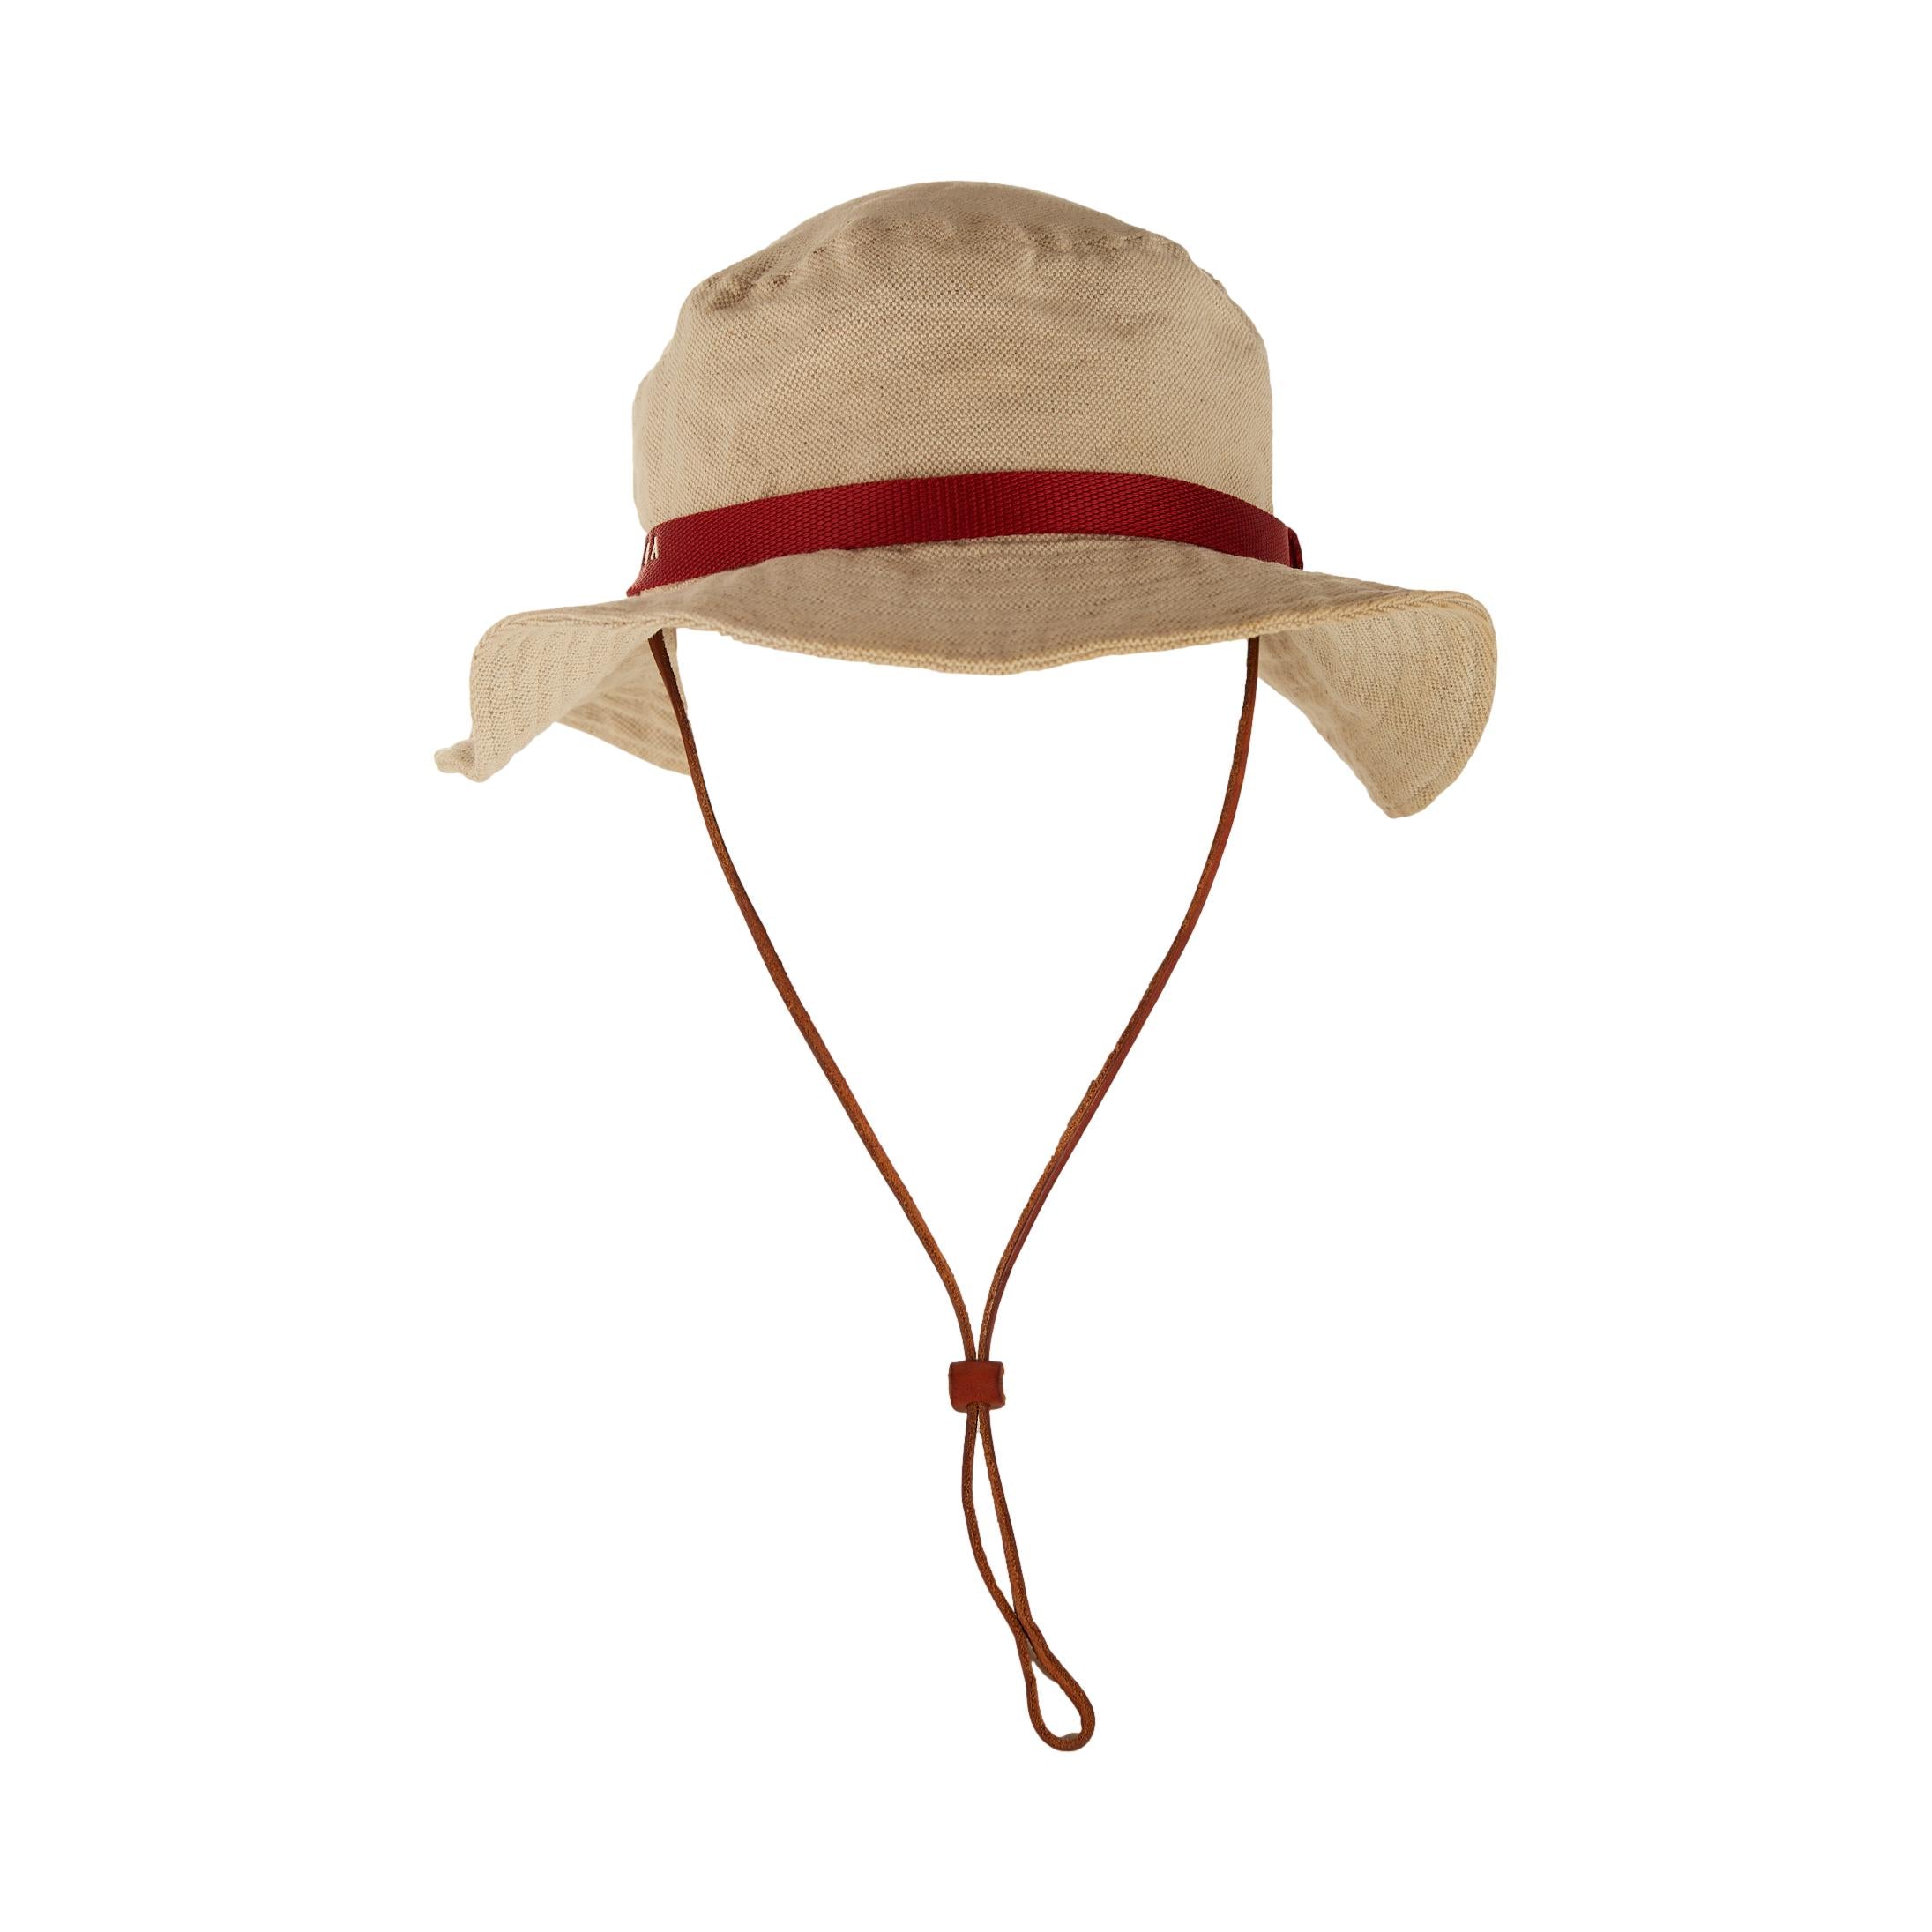 Prada Tan Canvas Logo Bucket Hat – Treasures of NYC